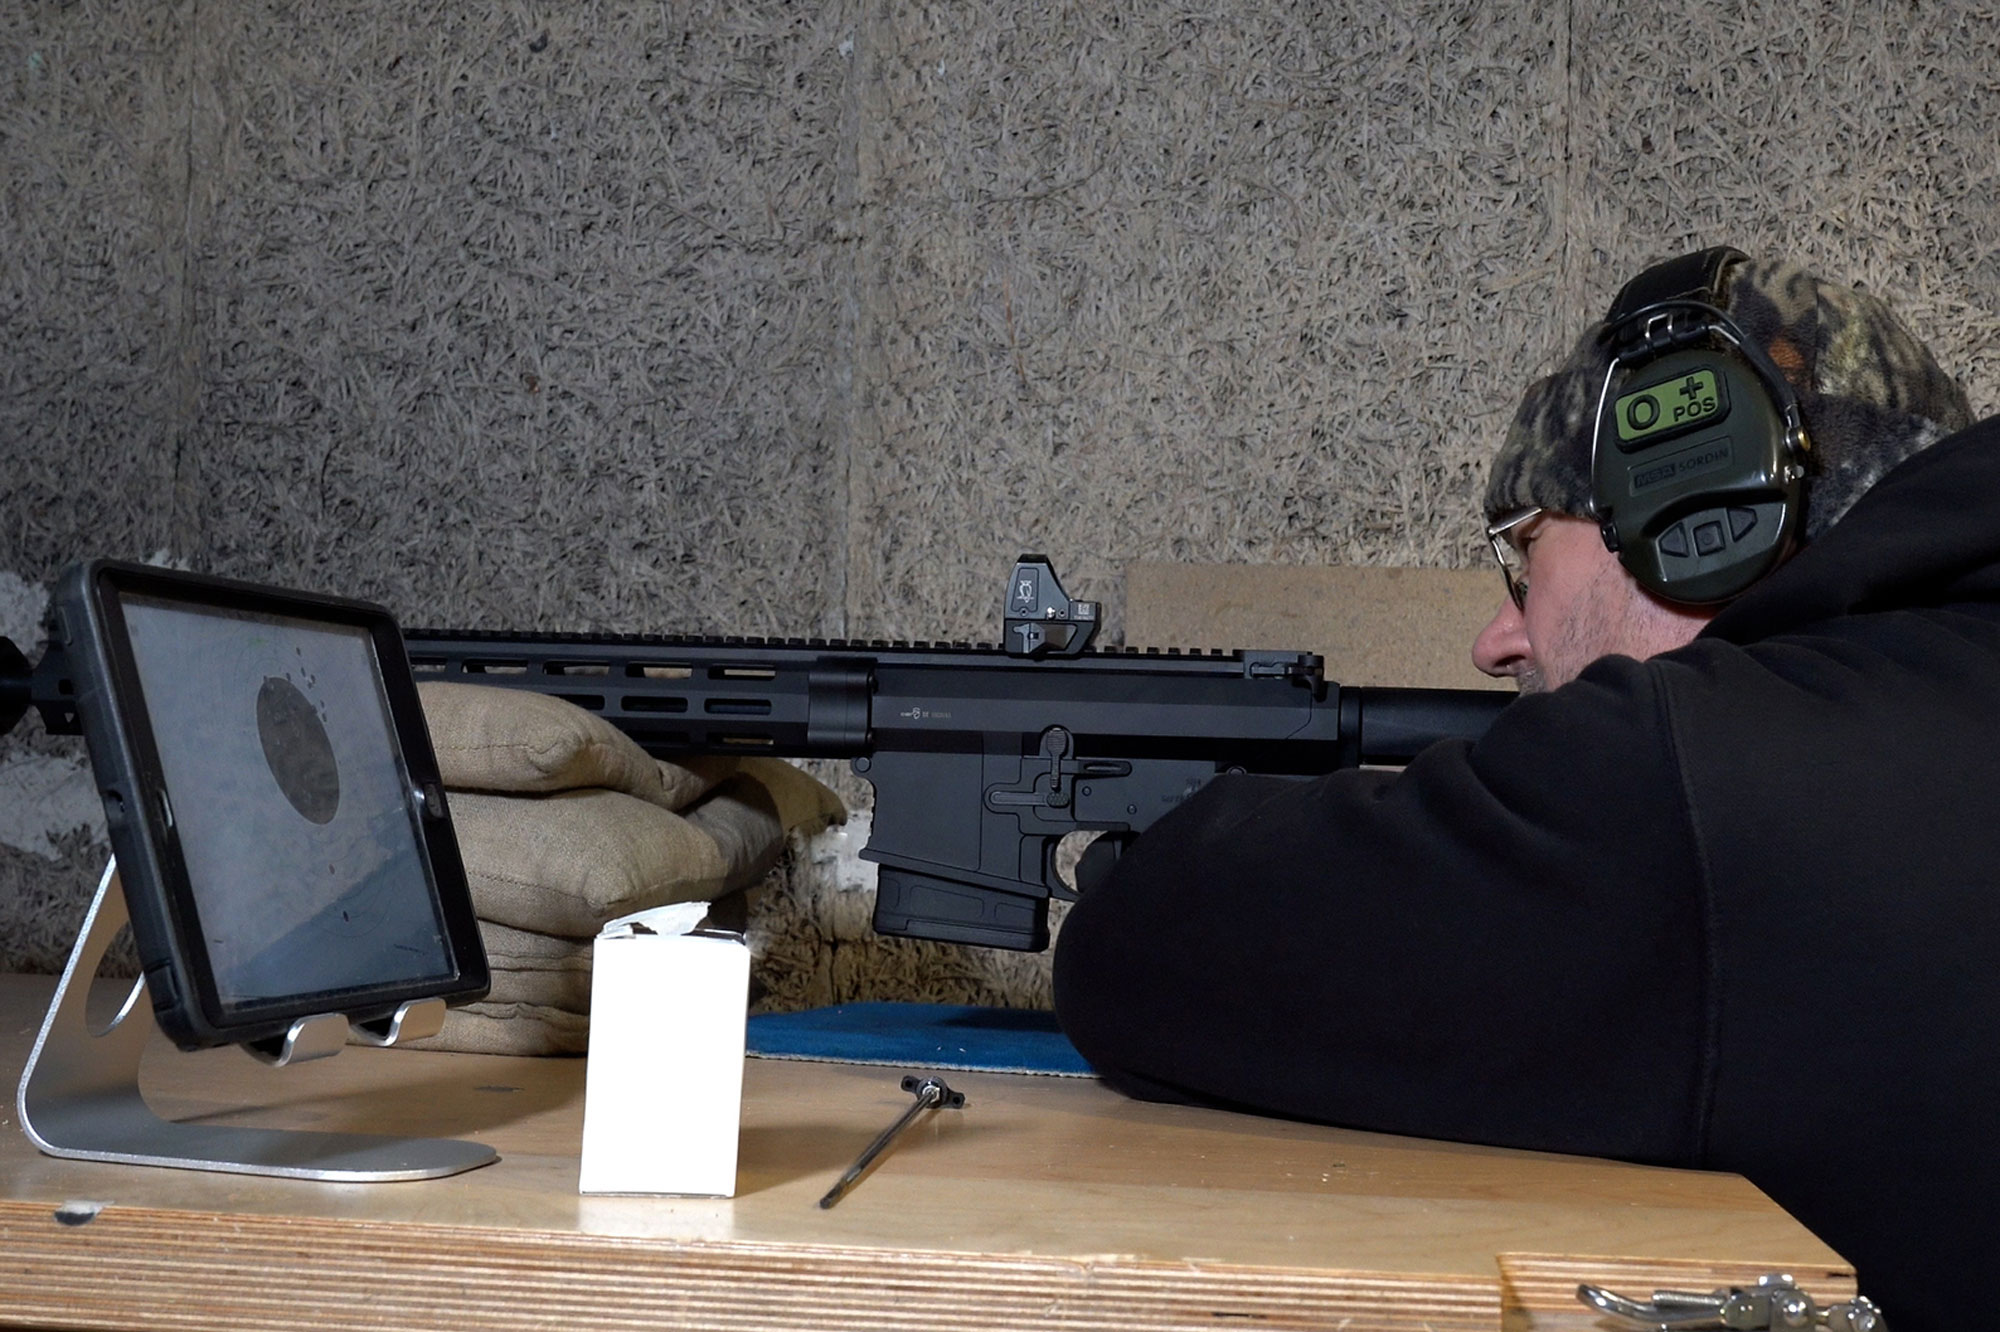 Extrem-Test: Schalldämpfer EP-Arms Whisper Pro 50 in der zerstörerischen  Werkstoffprüfung mit Video-Dokumentation